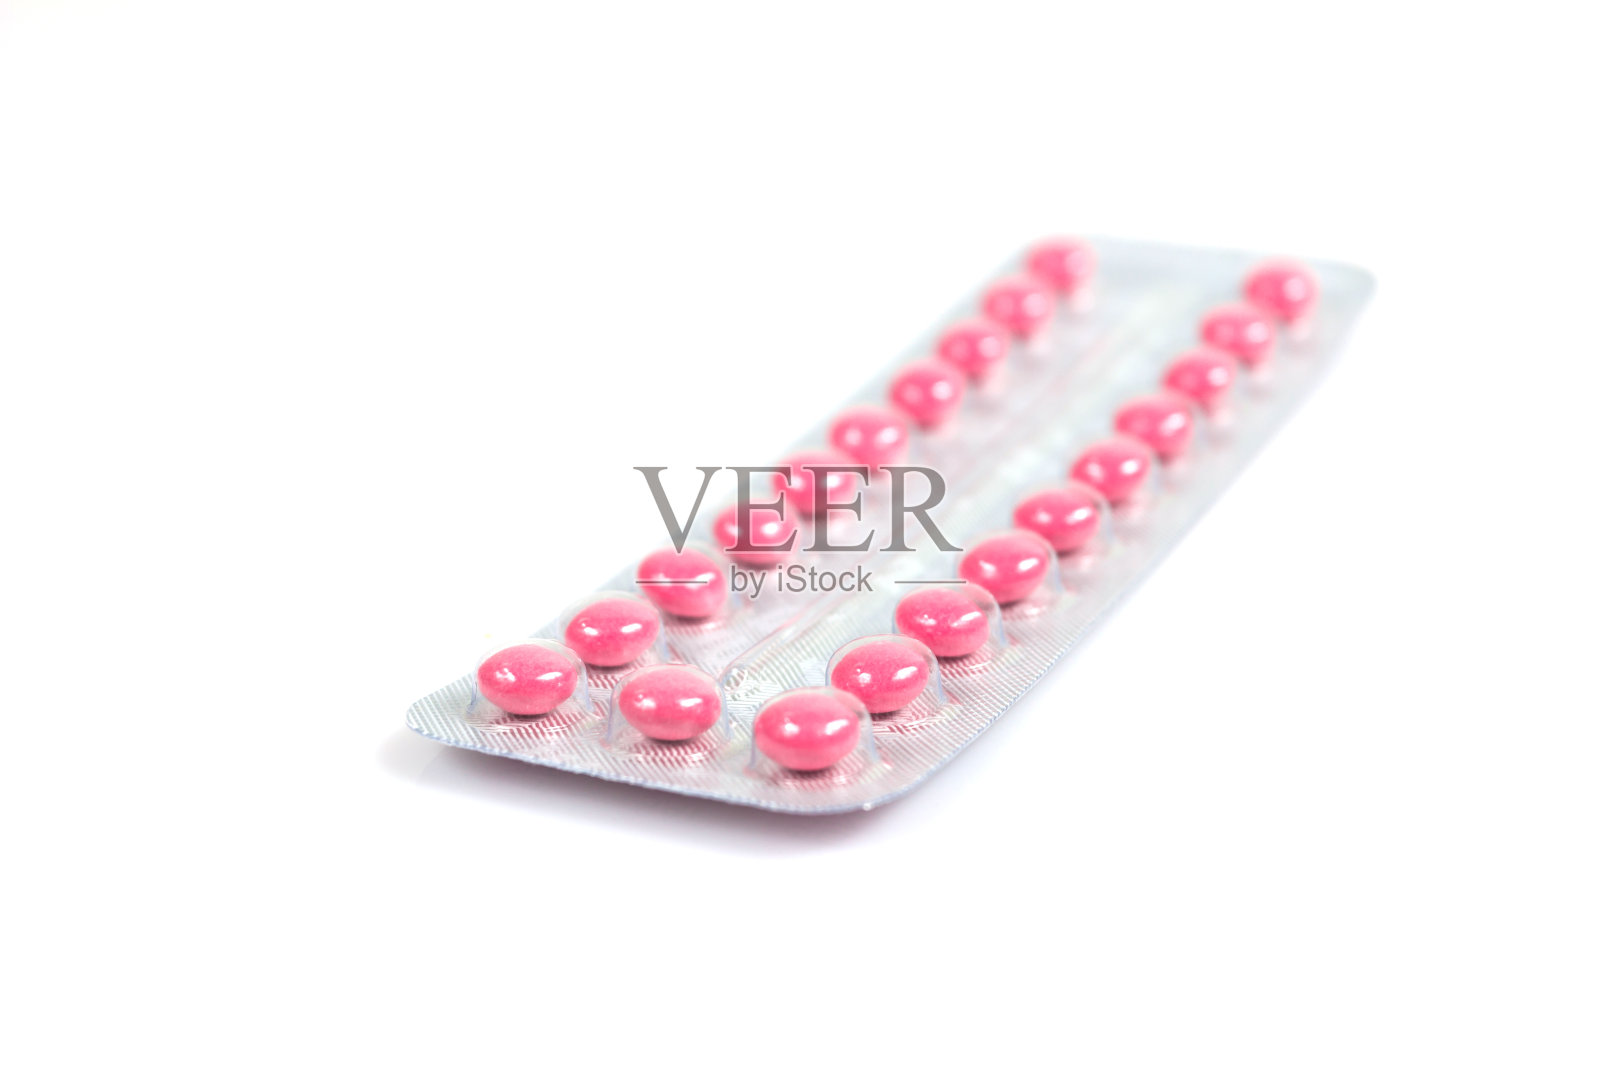 避孕药丸在白色背景上有选择性的焦点照片摄影图片